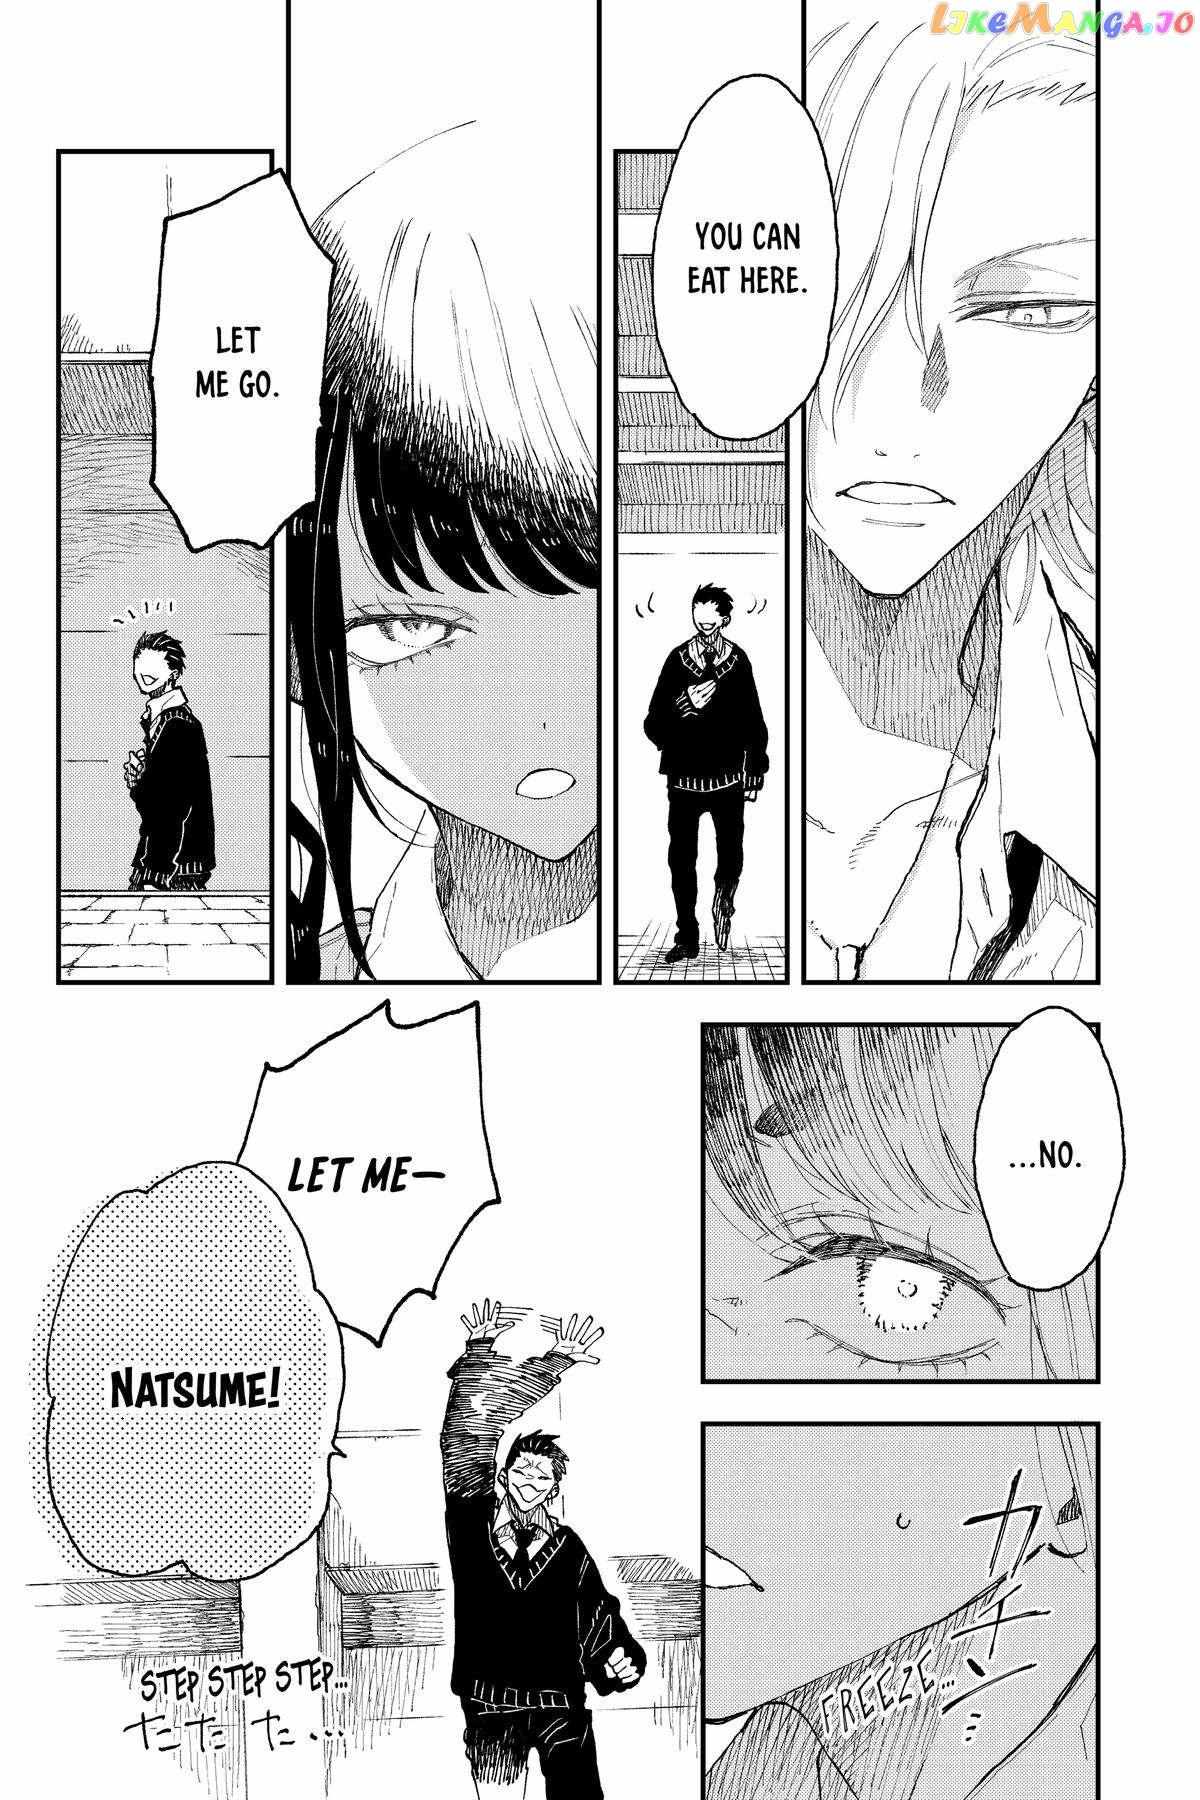 Natsume To Natsume - 29 page 22-950f7805